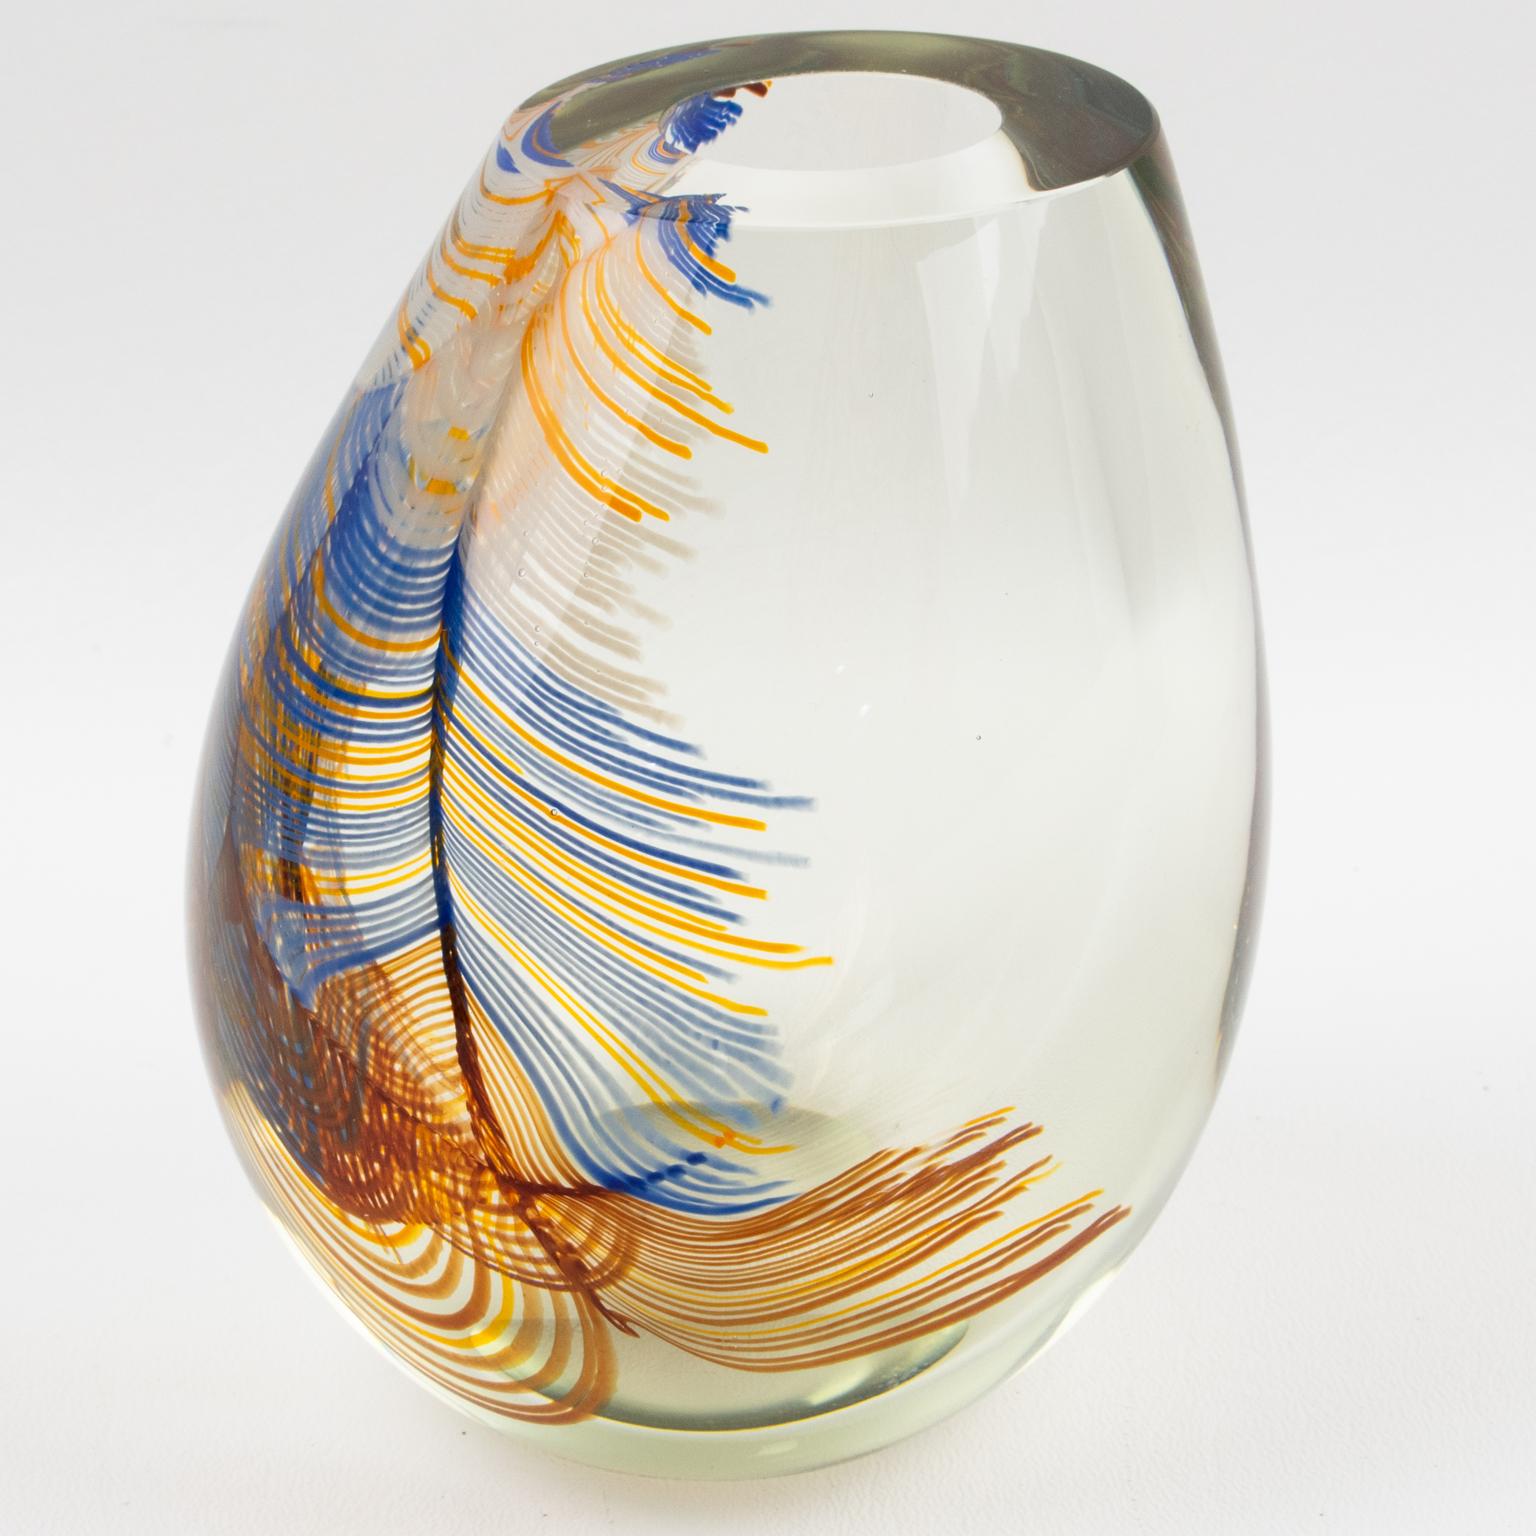 Faszinierende Stephen Smyers, Kalifornien 1979 moderne mundgeblasene Glasvase. Dieses wunderschöne handgefertigte Glas ist einzigartig im Vergleich zu allem, was in seinem Studio hergestellt wird.
Diese Vase hat eine hohle und elegante, bauchige